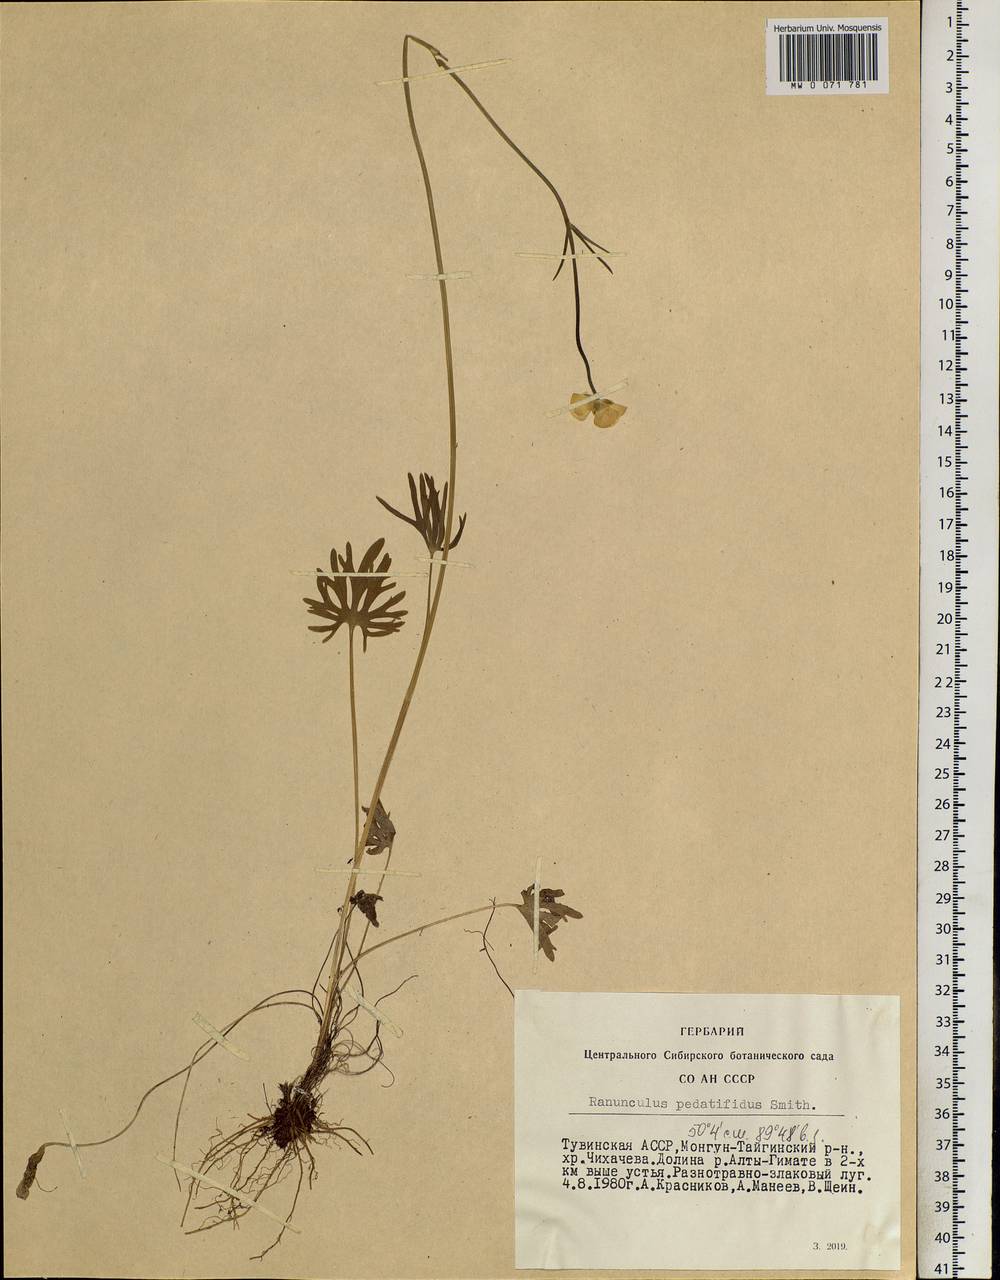 Ranunculus pedatifidus Sm., Siberia, Altai & Sayany Mountains (S2) (Russia)